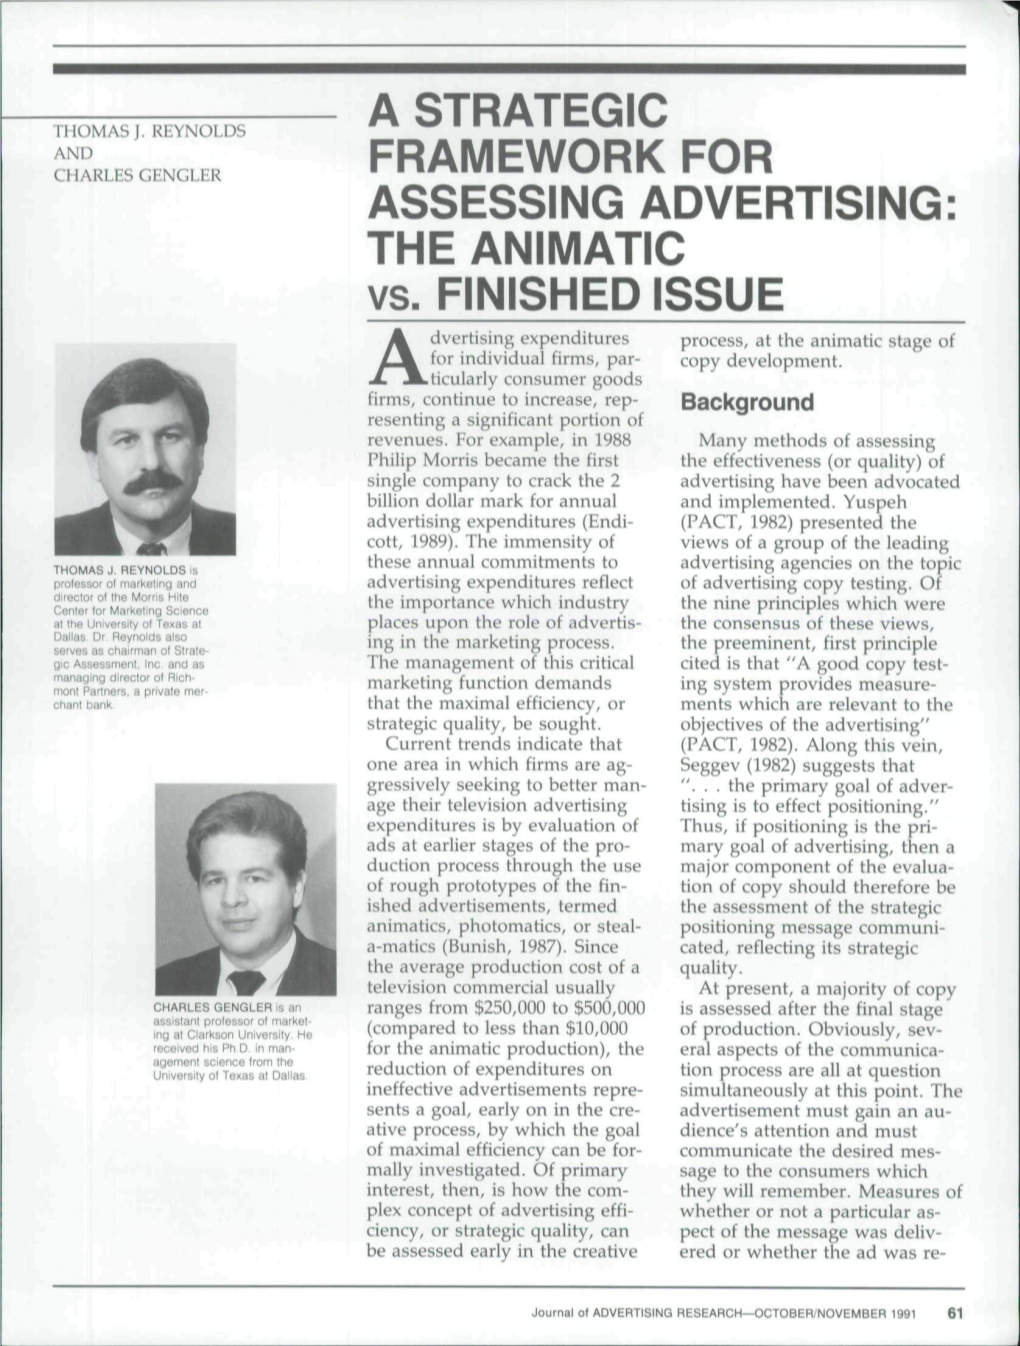 A Strategic Framework for Assessing Advertising